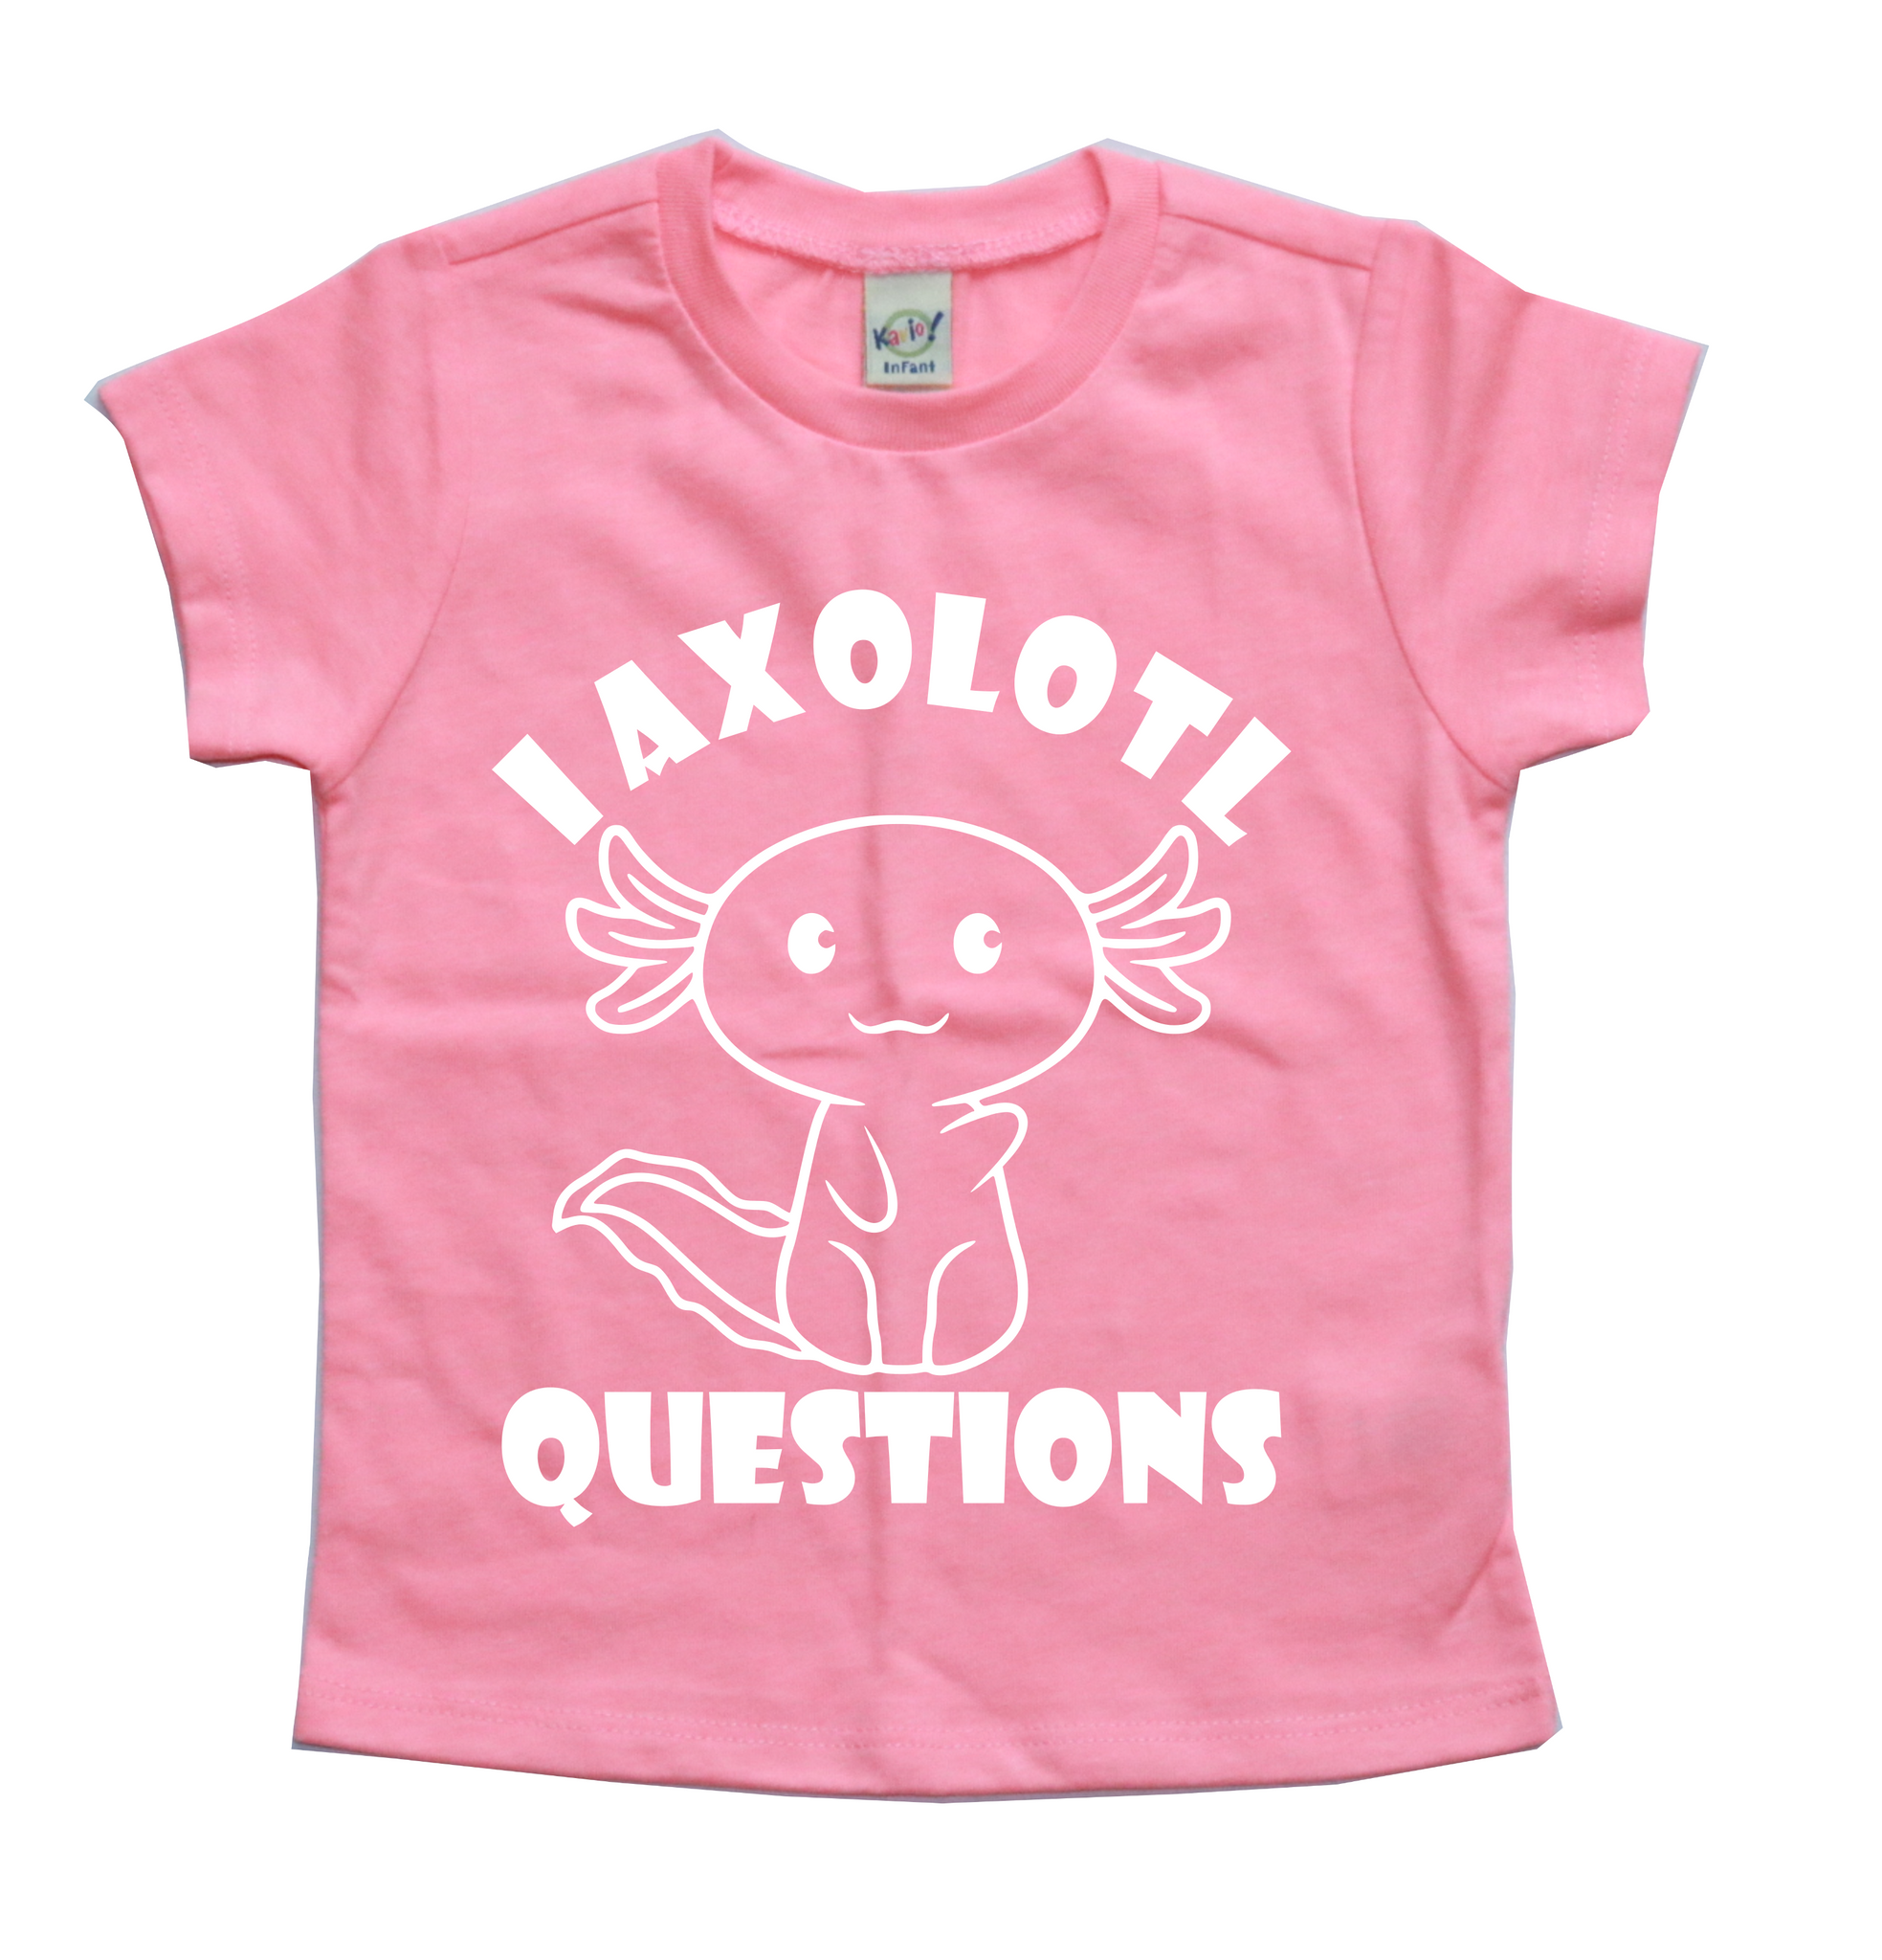 I AXOLOTL QUESTIONS KIDS SHIRT